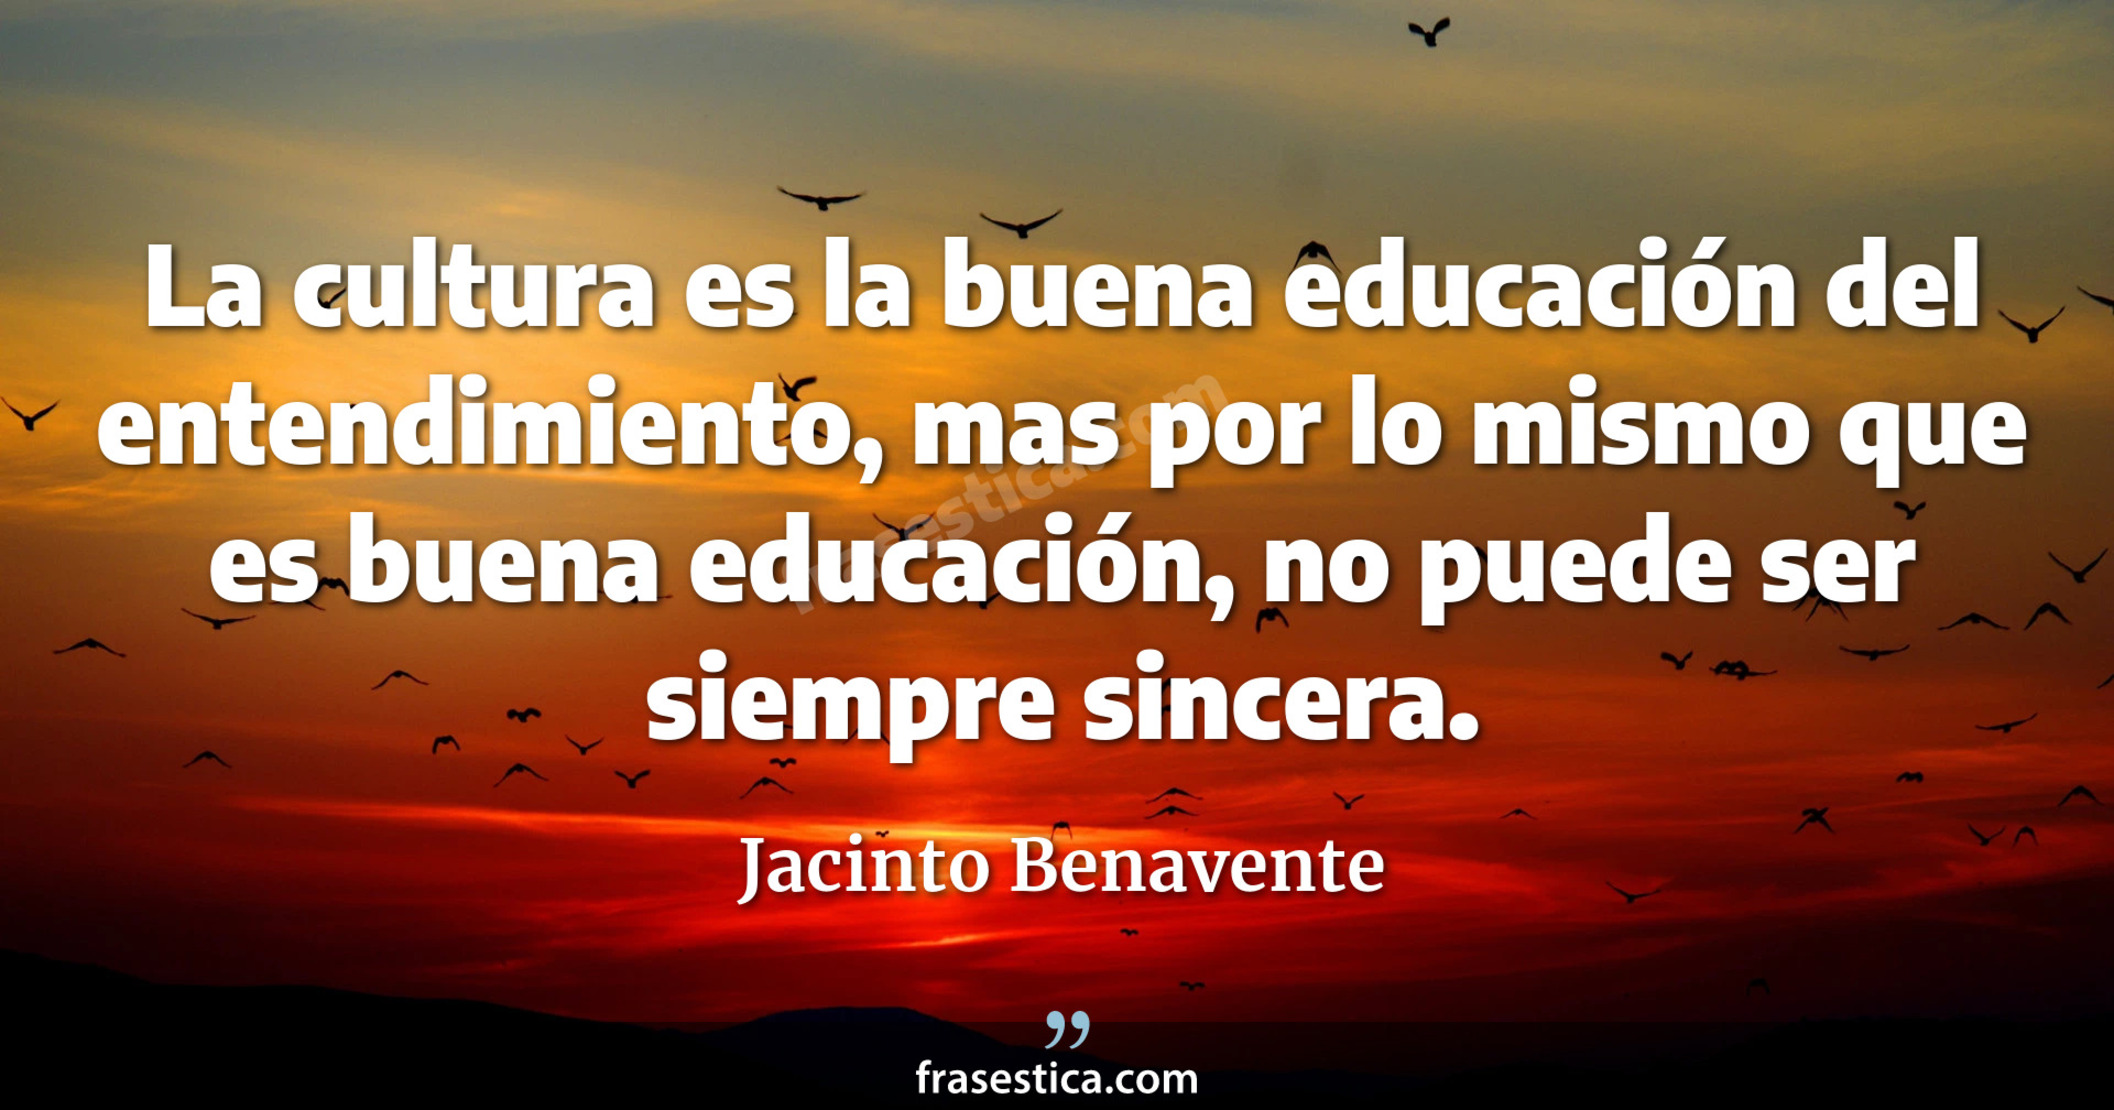 La cultura es la buena educación del entendimiento, mas por lo mismo que es buena educación, no puede ser siempre sincera. - Jacinto Benavente